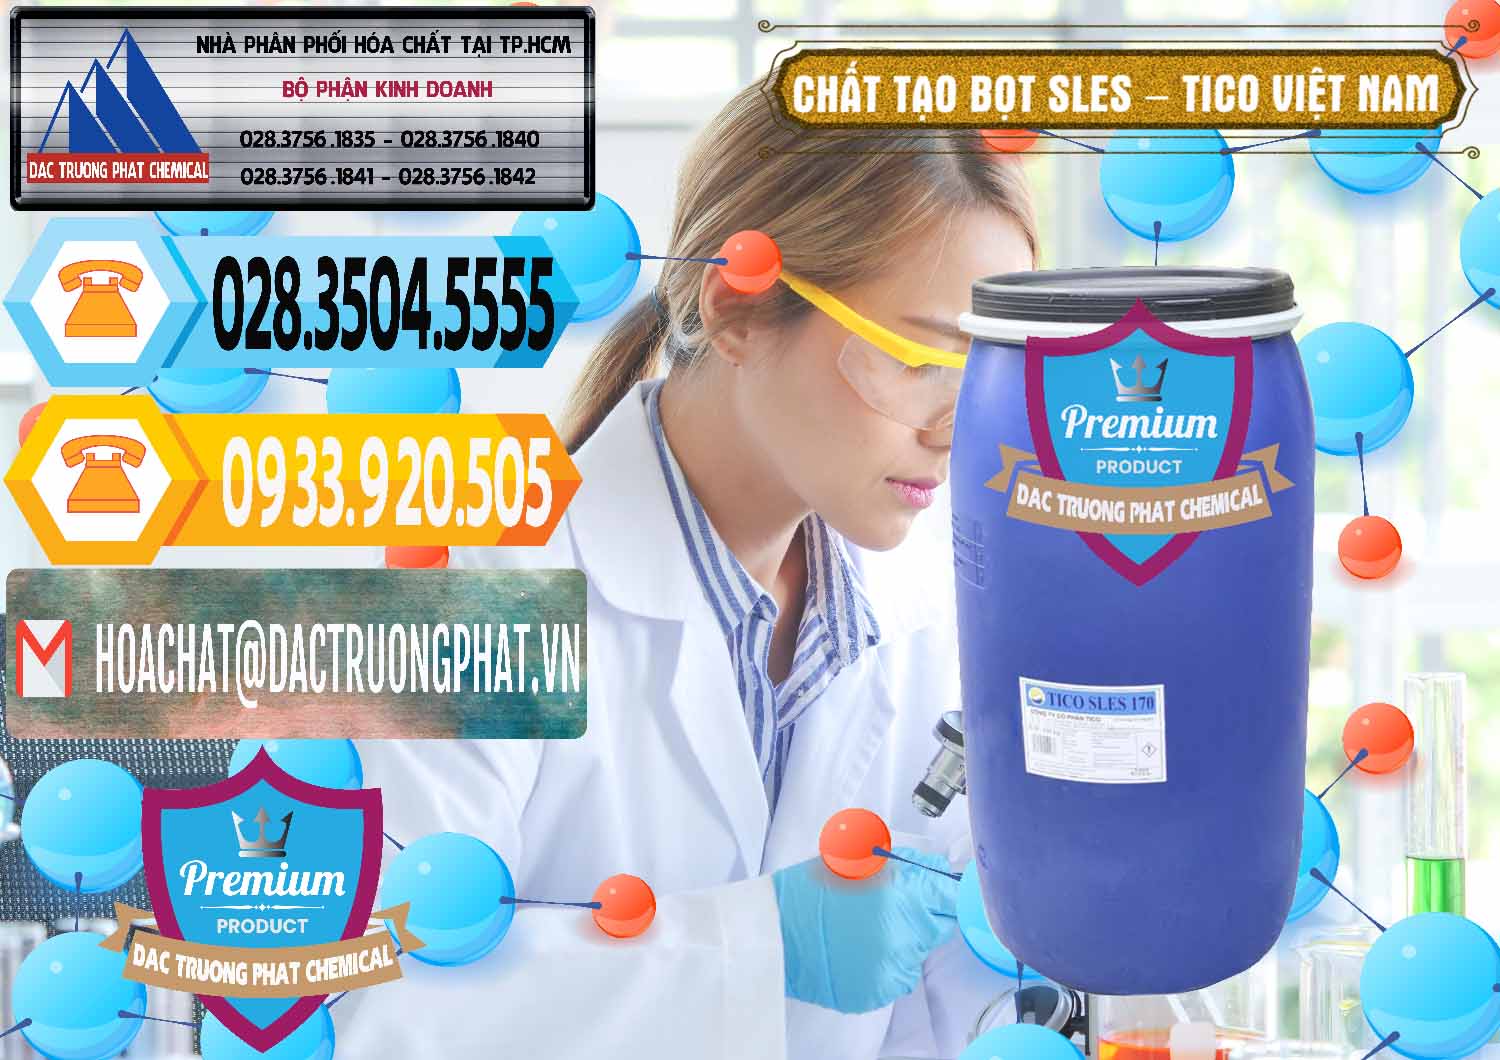 Nơi cung cấp - phân phối Chất Tạo Bọt Sles - Sodium Lauryl Ether Sulphate Tico Việt Nam - 0304 - Chuyên kinh doanh và phân phối hóa chất tại TP.HCM - hoachattayrua.net